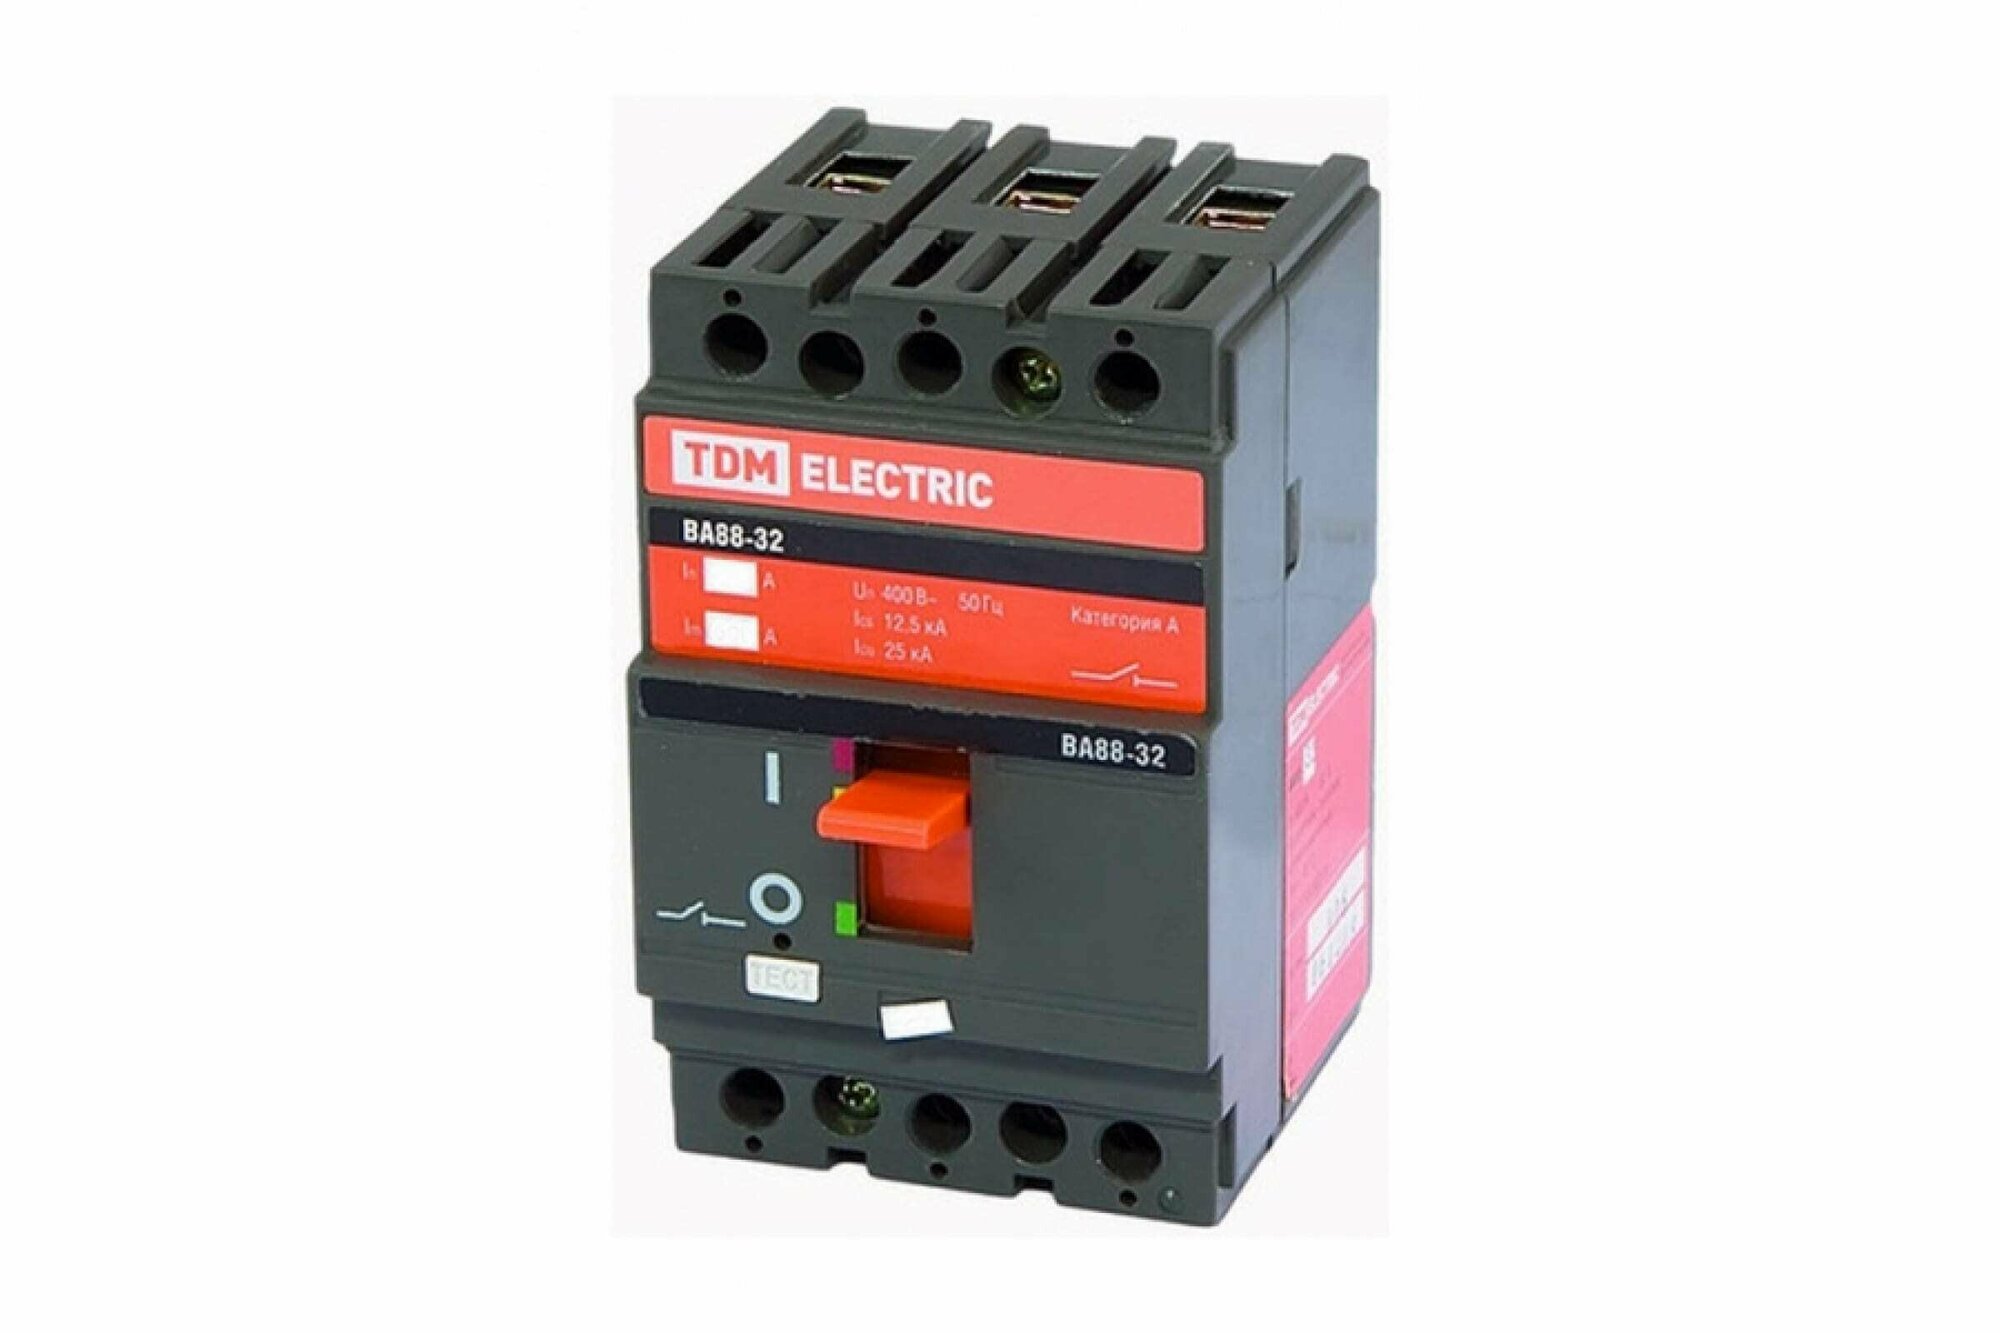 Автоматический выключатель силовой Tdm Electric ВА88-32 3Р 125А 25кА, SQ0707-0009